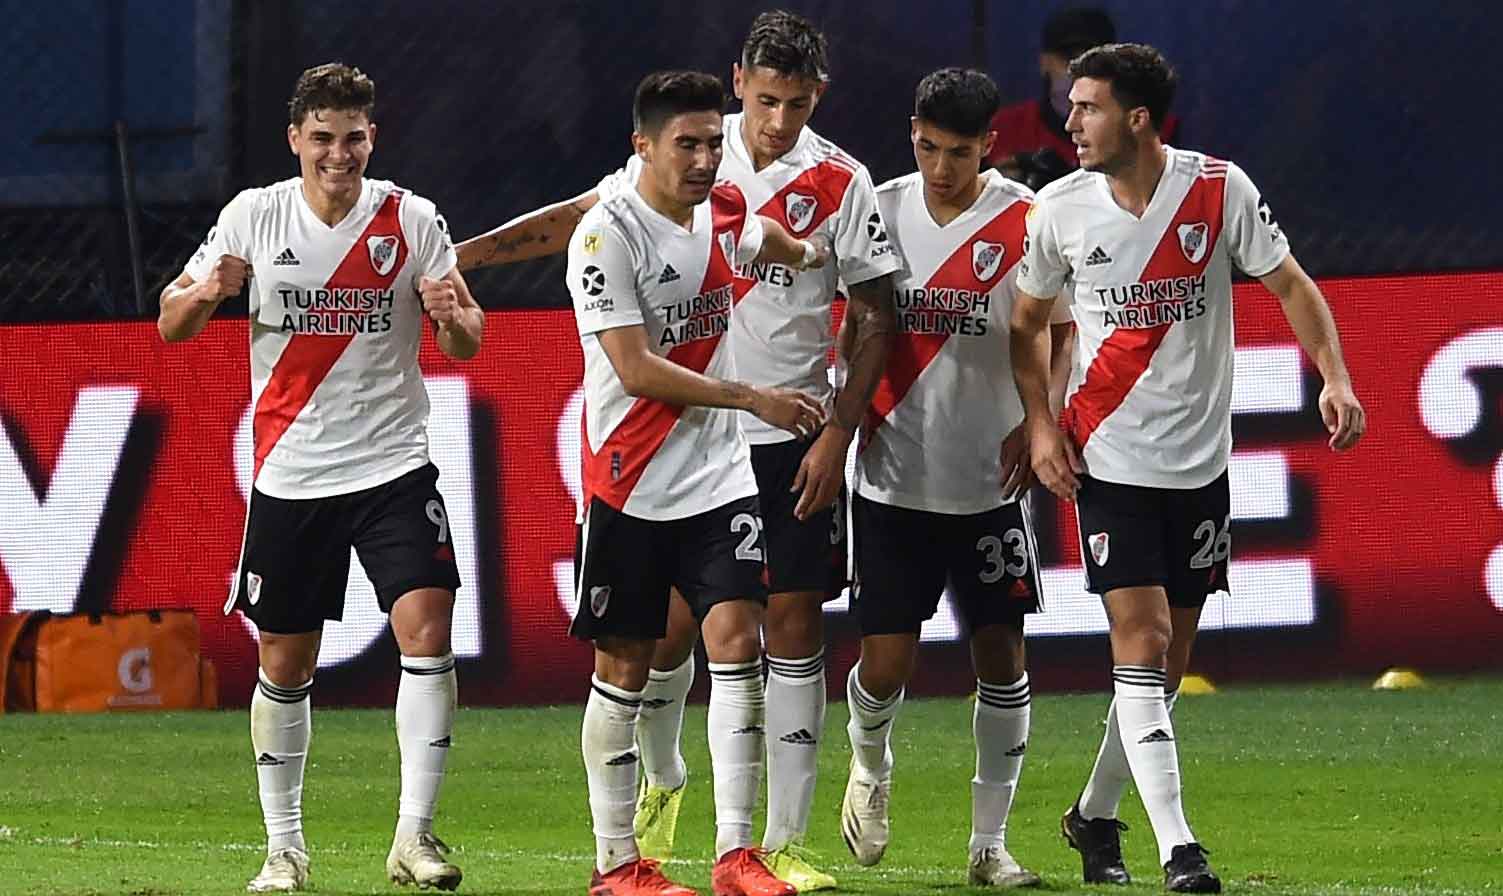 River Plate, que sufrió un brote de coronavirus y tiene solo 10 jugadores disponibles (ninguno de ellos portero), recibirá este miércoles a Independiente Santa Fe